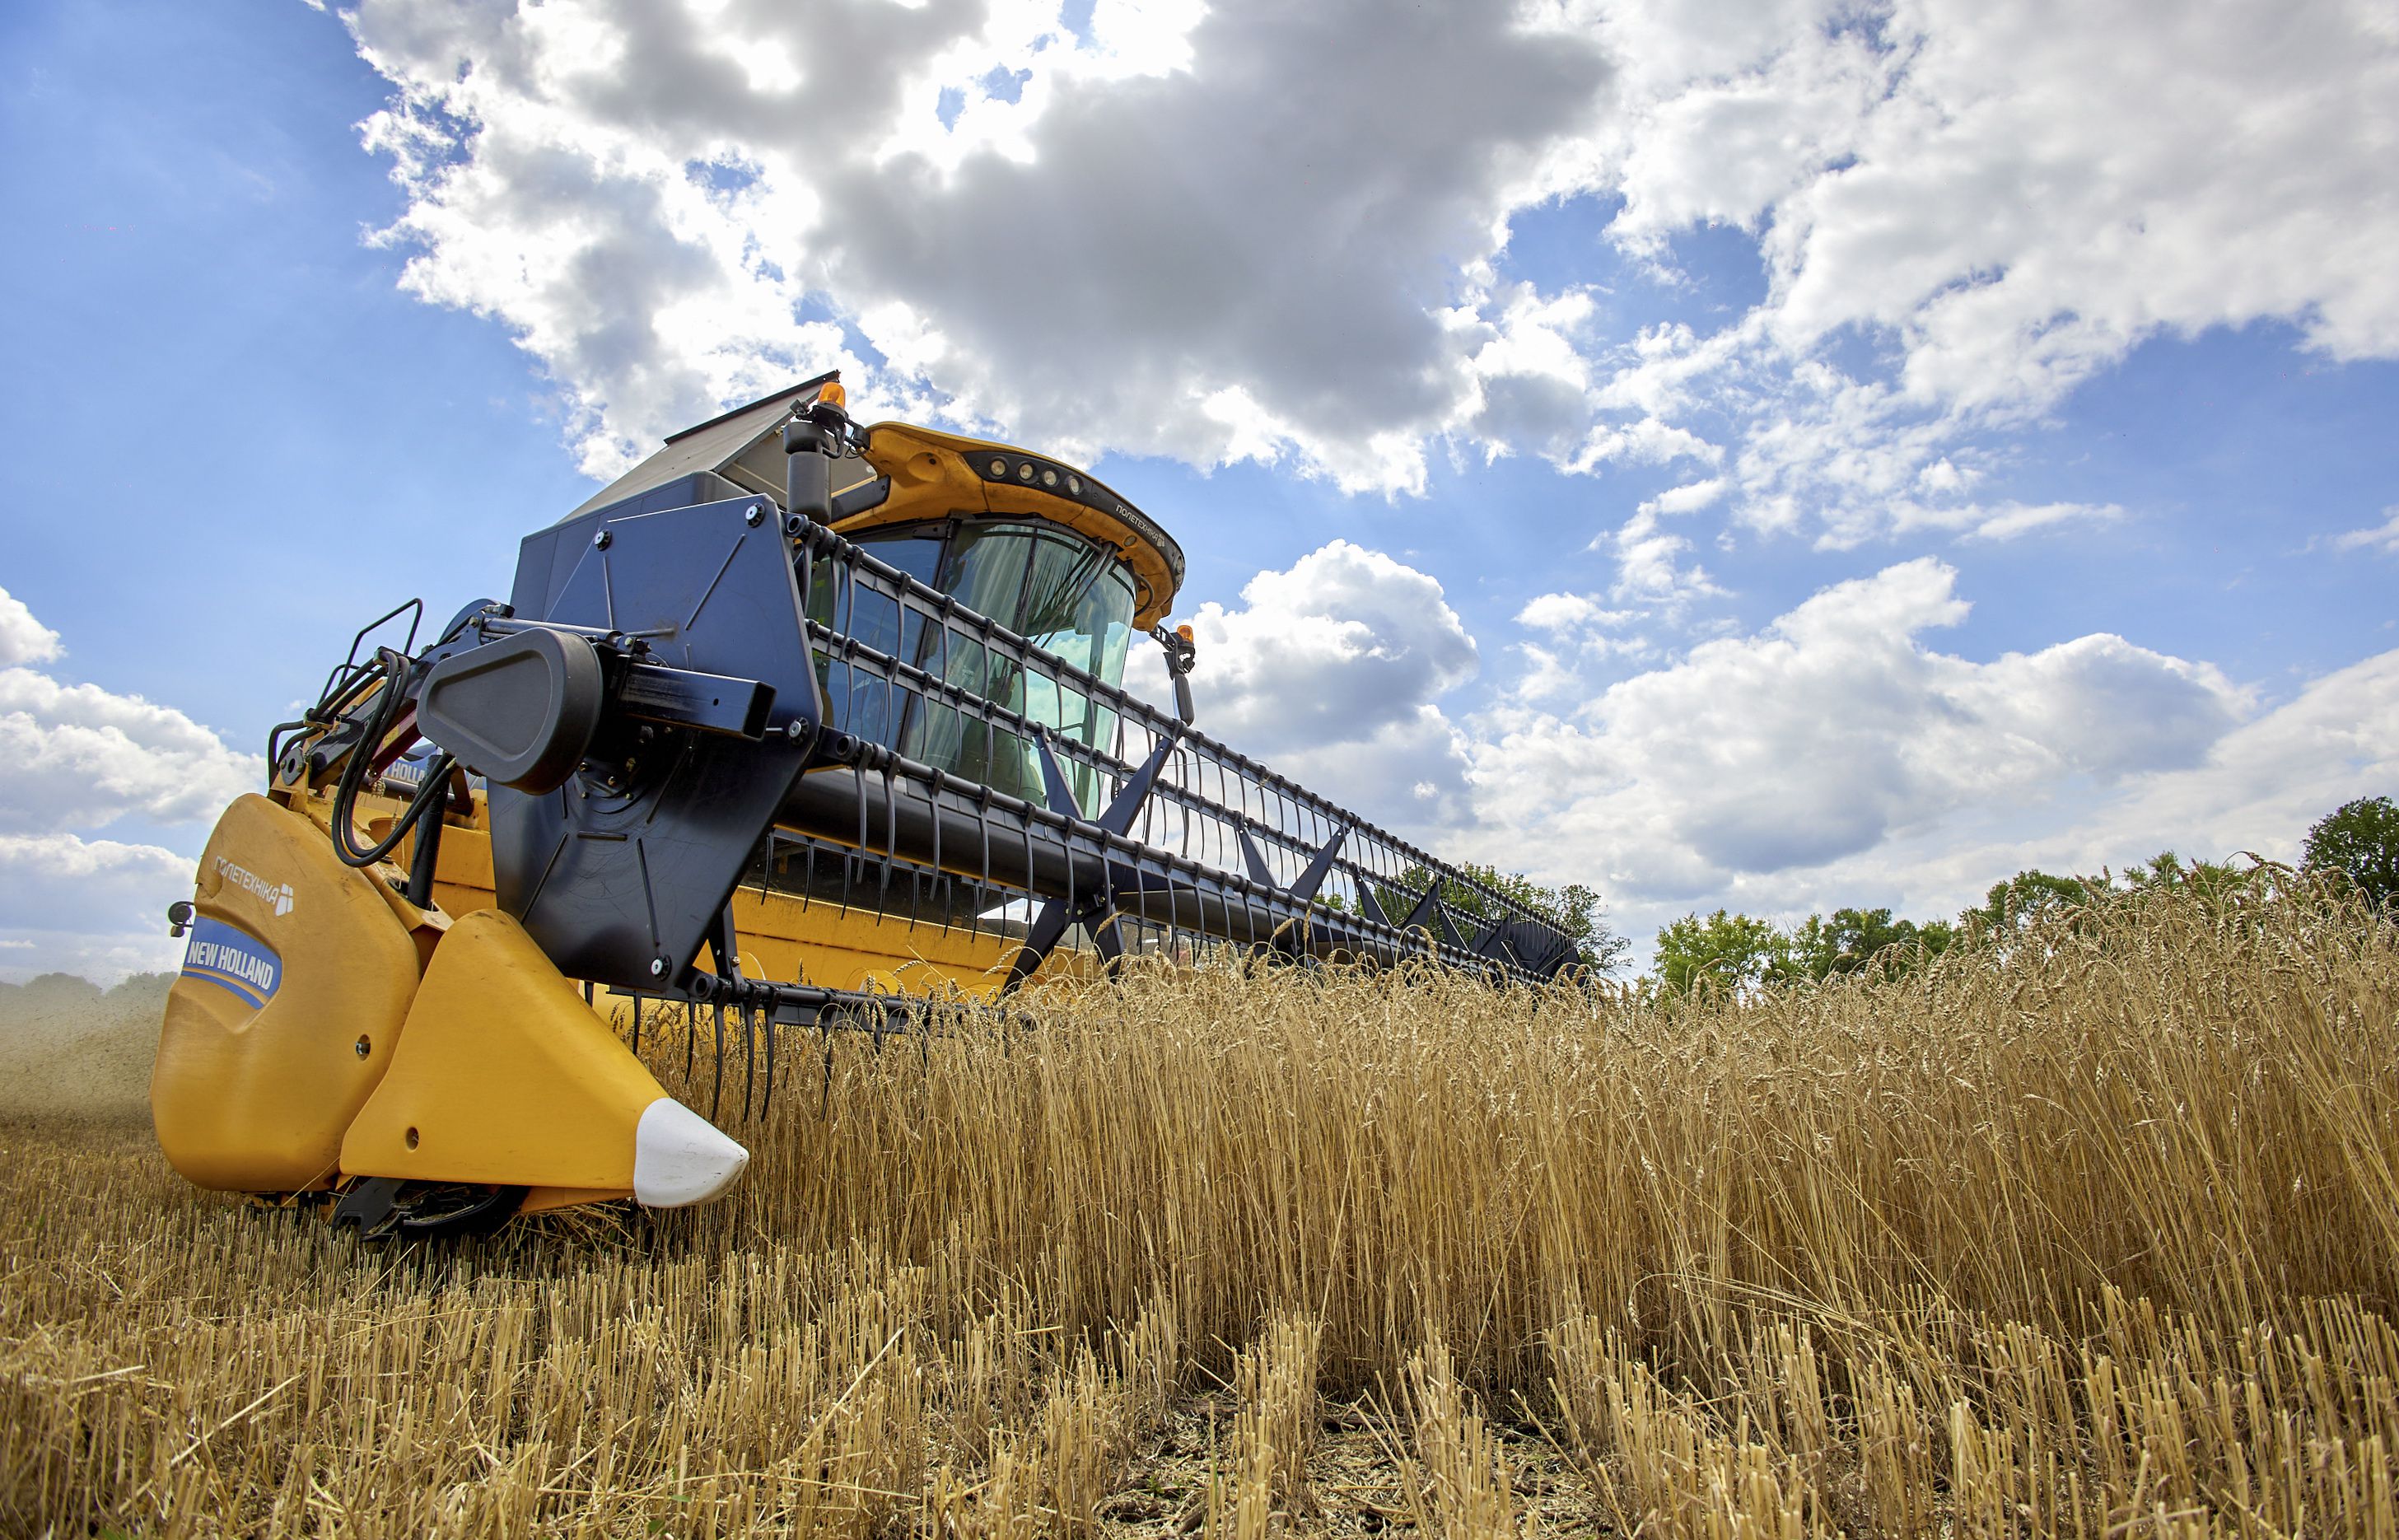  Una cosechadora recolecta trigo en un campo cerca de Járkov, Ucrania, el 30 de julio de 2022. EFE/Sergey Kozlov 